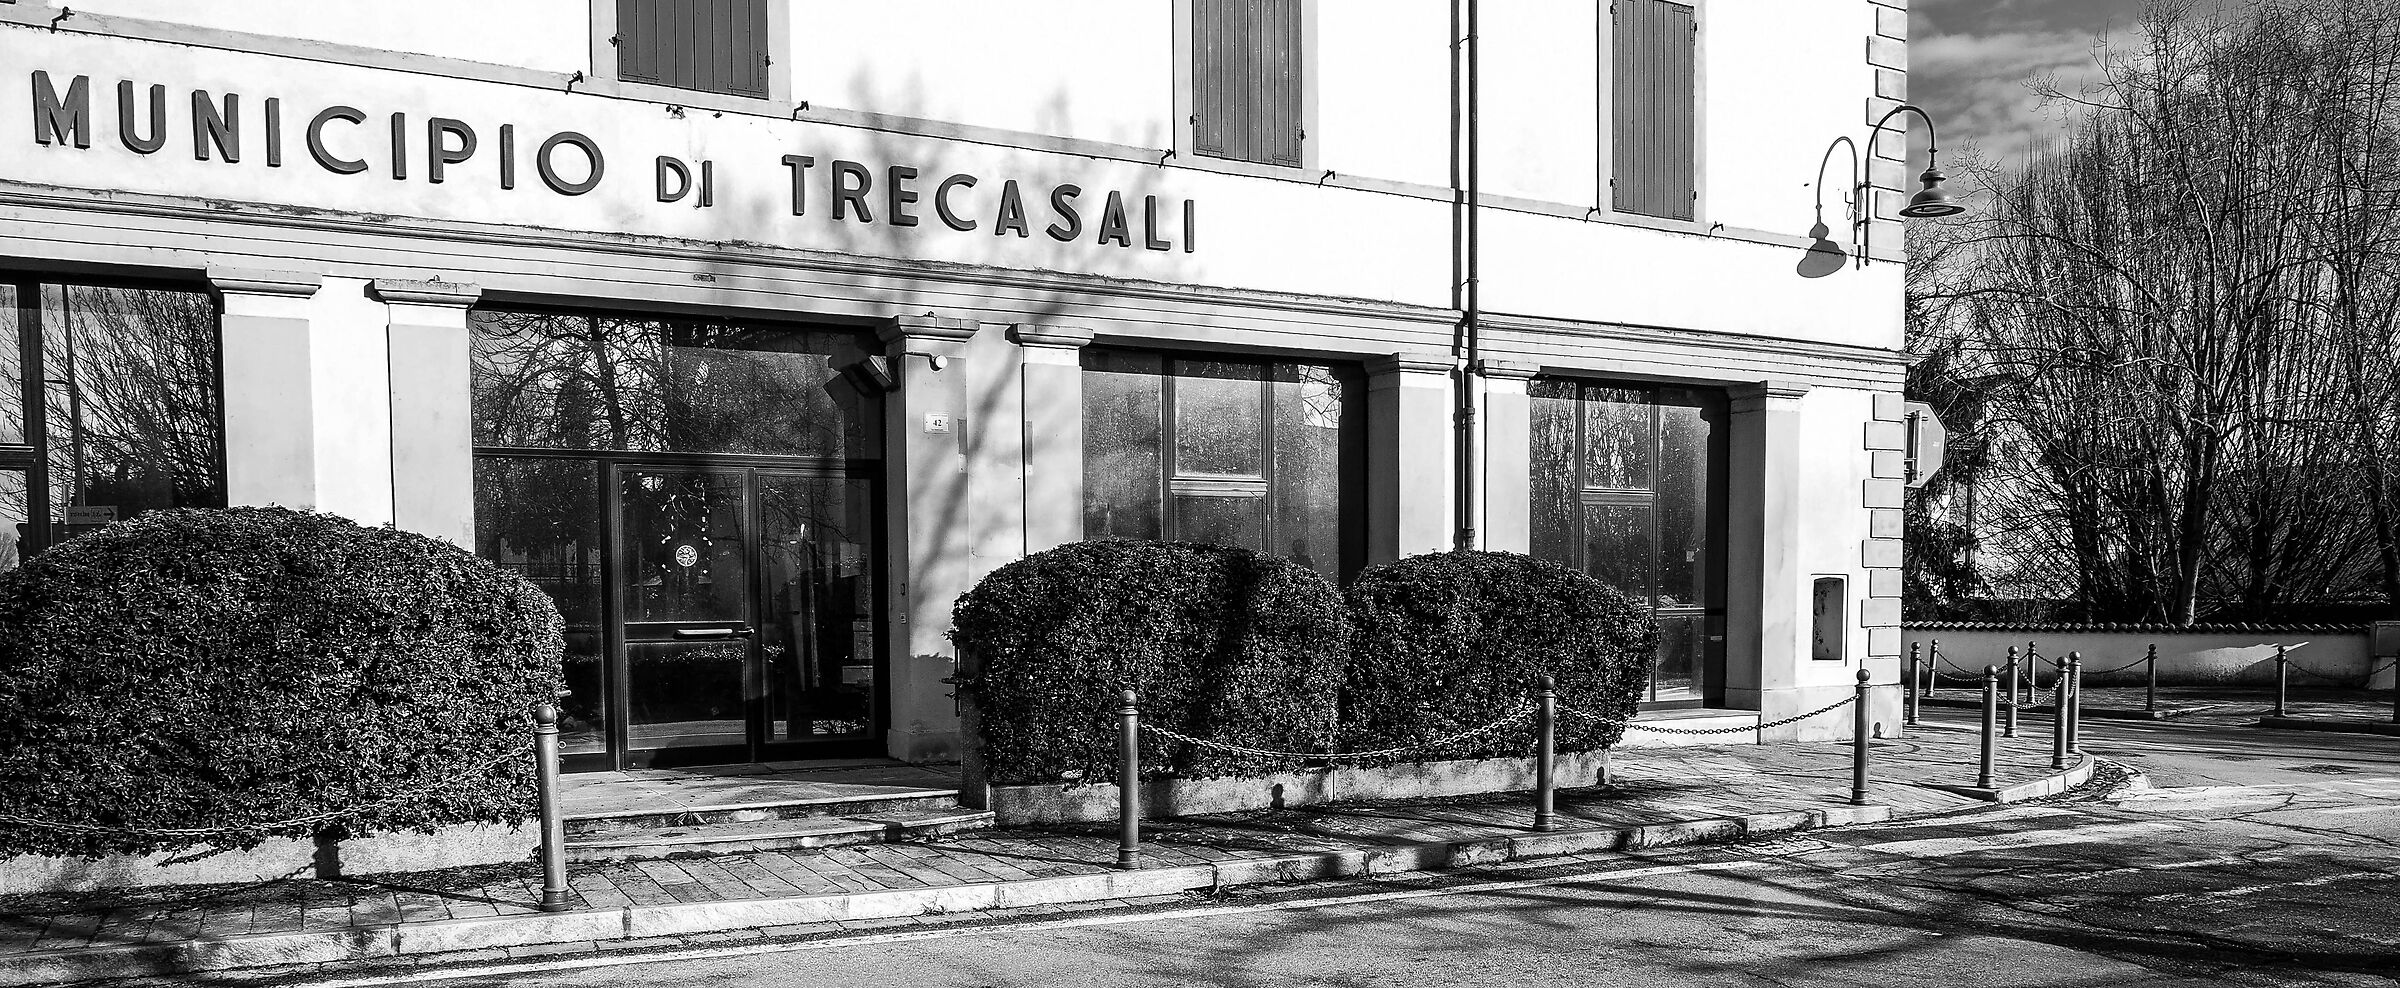 Former town hall of Trecasali...